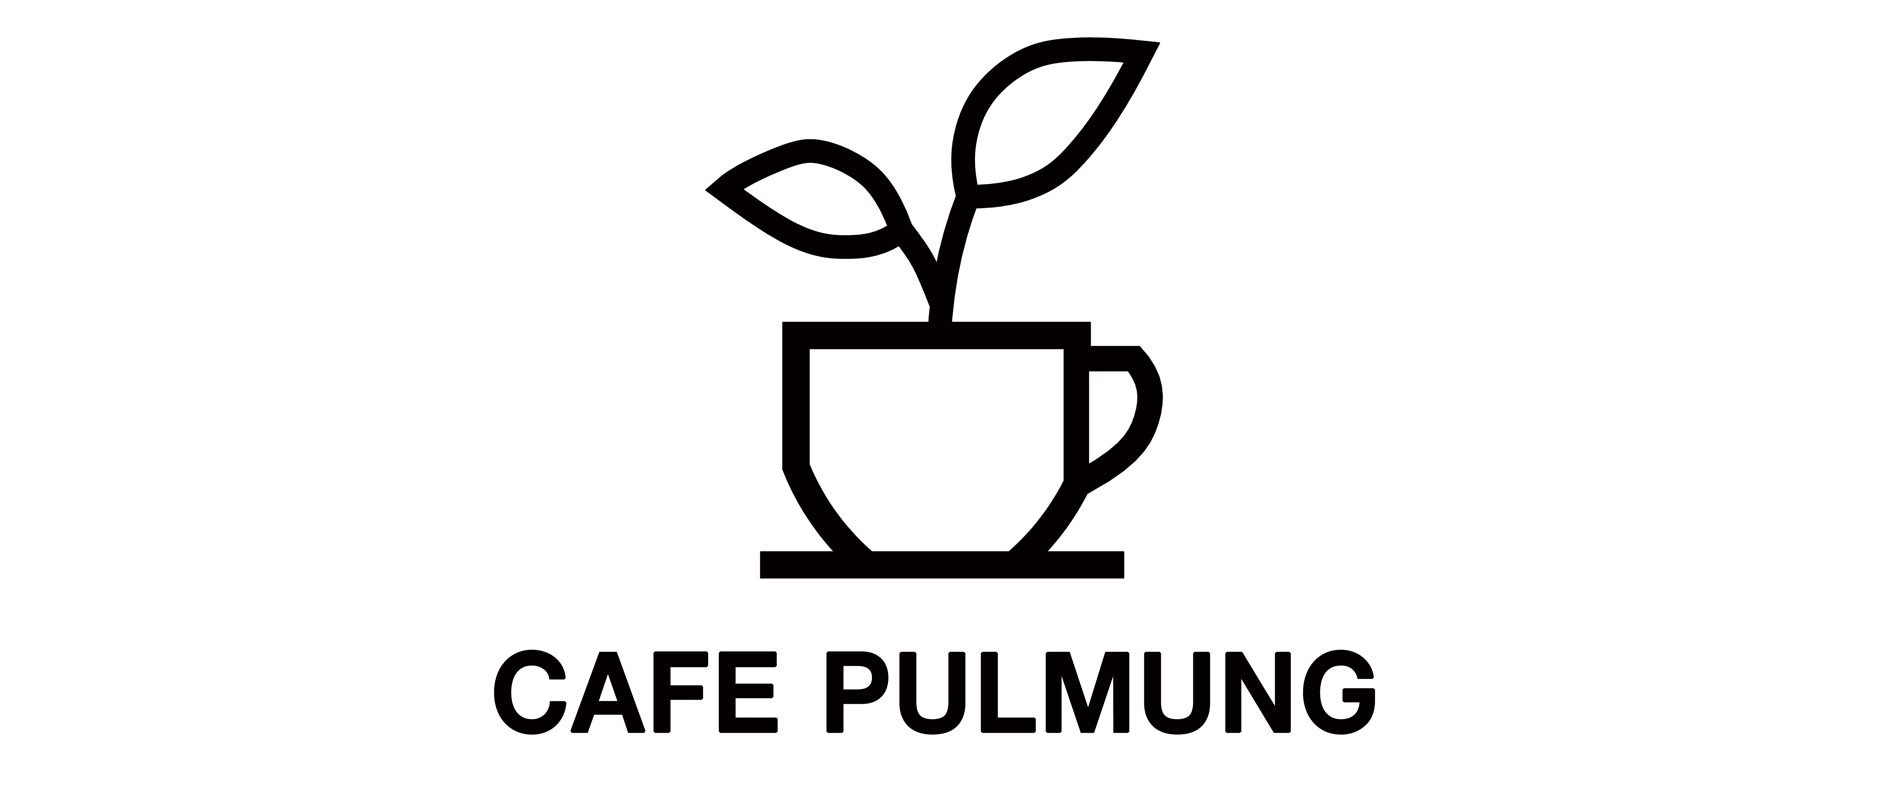 카페풀멍(CAFE PULMUNG)